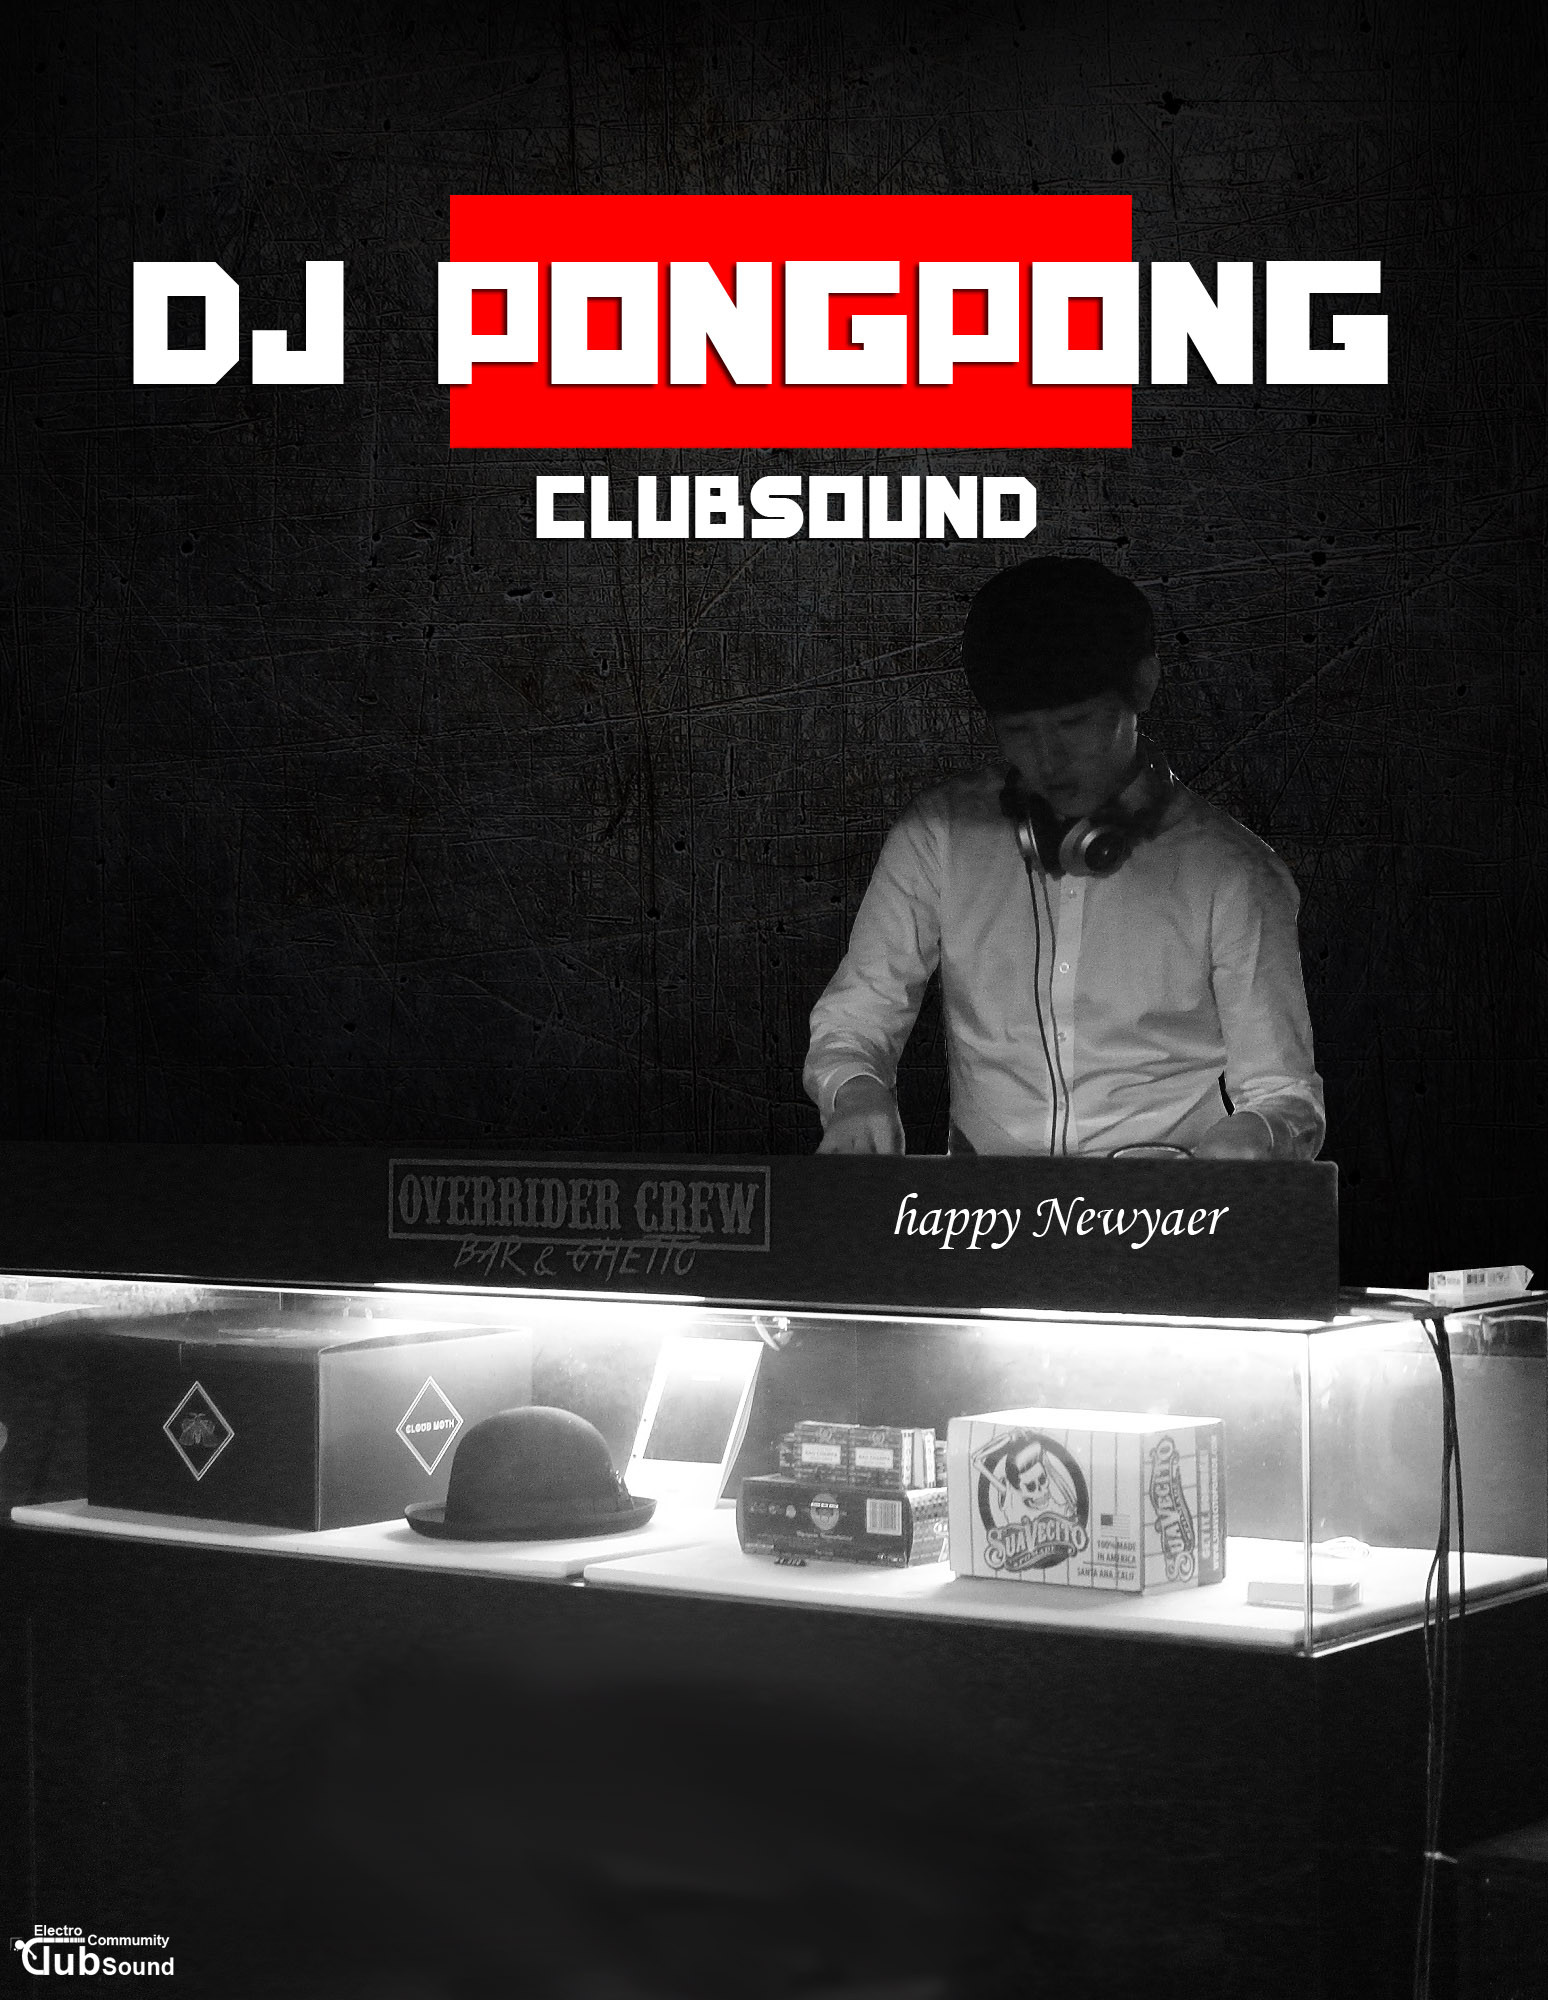 KakaoTalk_20151230_234736181.jpg : DJ Pong Pong 완전 터지는 새로운 믹셋!! 등장!! 나도 베스트 가보자 4탄!! 즐감하세영!!!